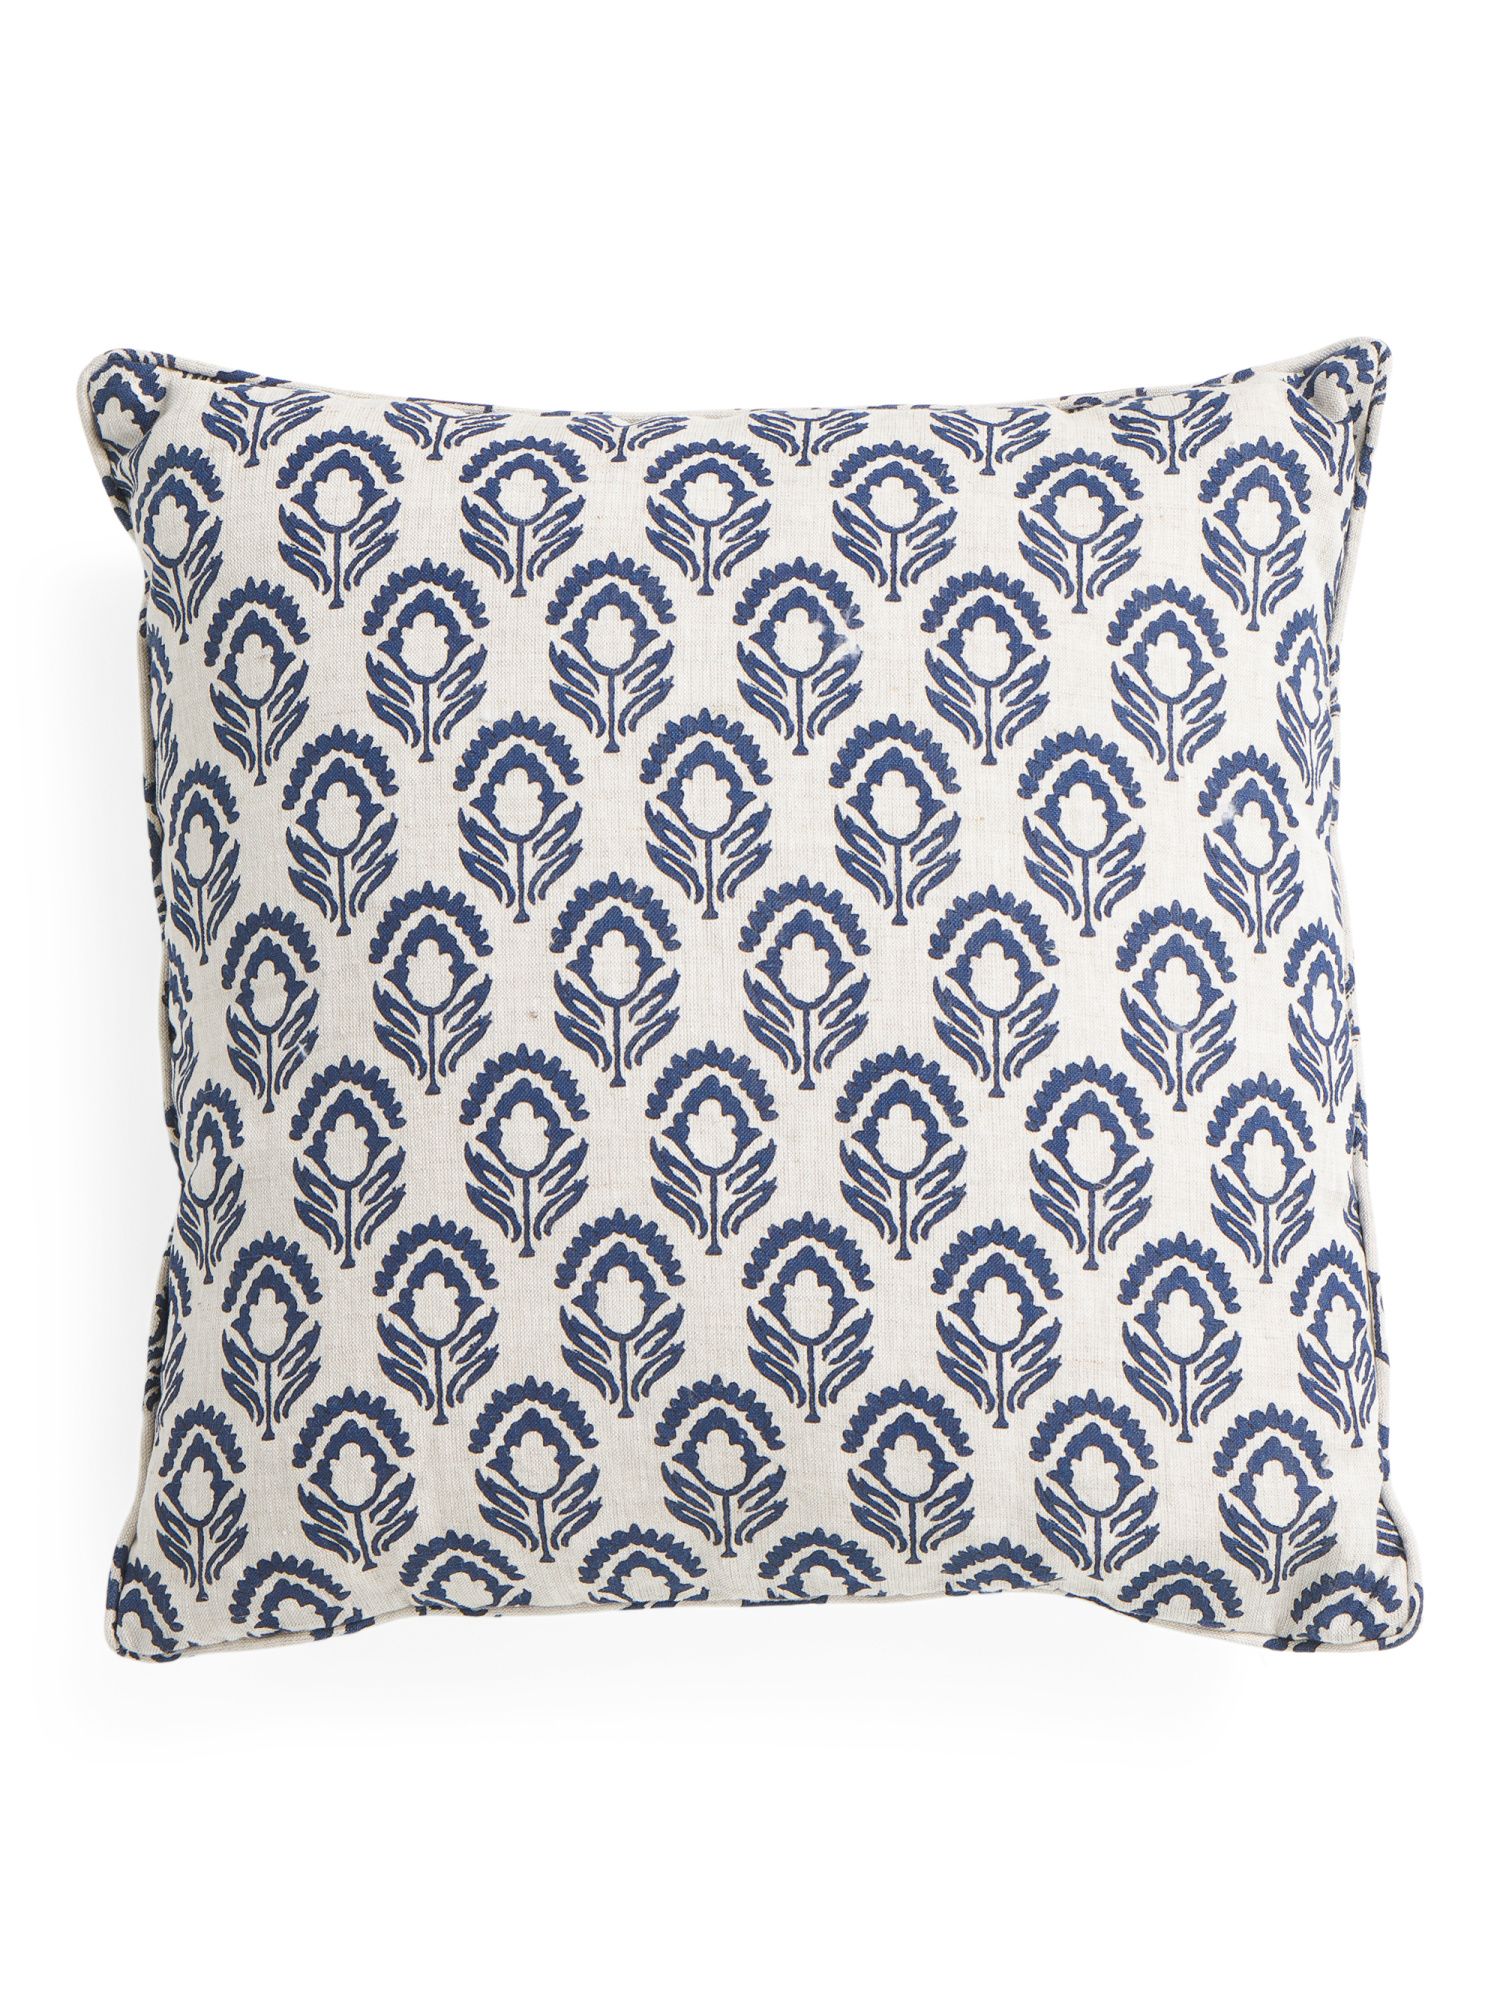 20x20 Linen Printed Pillow | Throw Pillows | T.J.Maxx | TJ Maxx